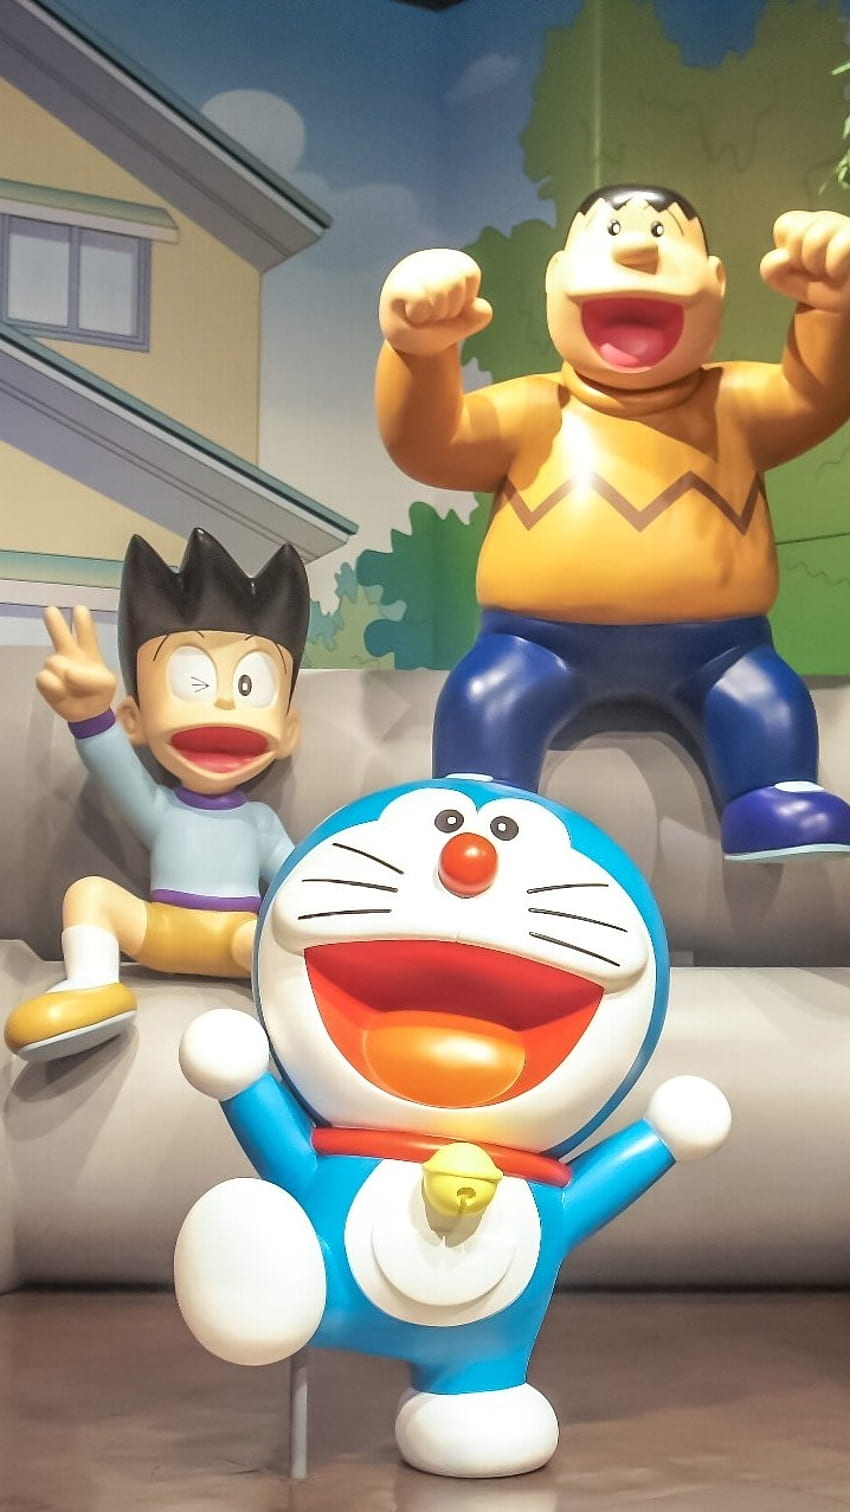 Gian HD wallpapers là một bộ sưu tập những hình ảnh đẹp và ấn tượng về các nhân vật trong manga Doraemon. Bạn sẽ được chiêm ngưỡng những bức tranh tuyệt đẹp với chất lượng hình ảnh tốt nhất, dễ dàng mang lại cho bạn những cảm xúc tuyệt vời.